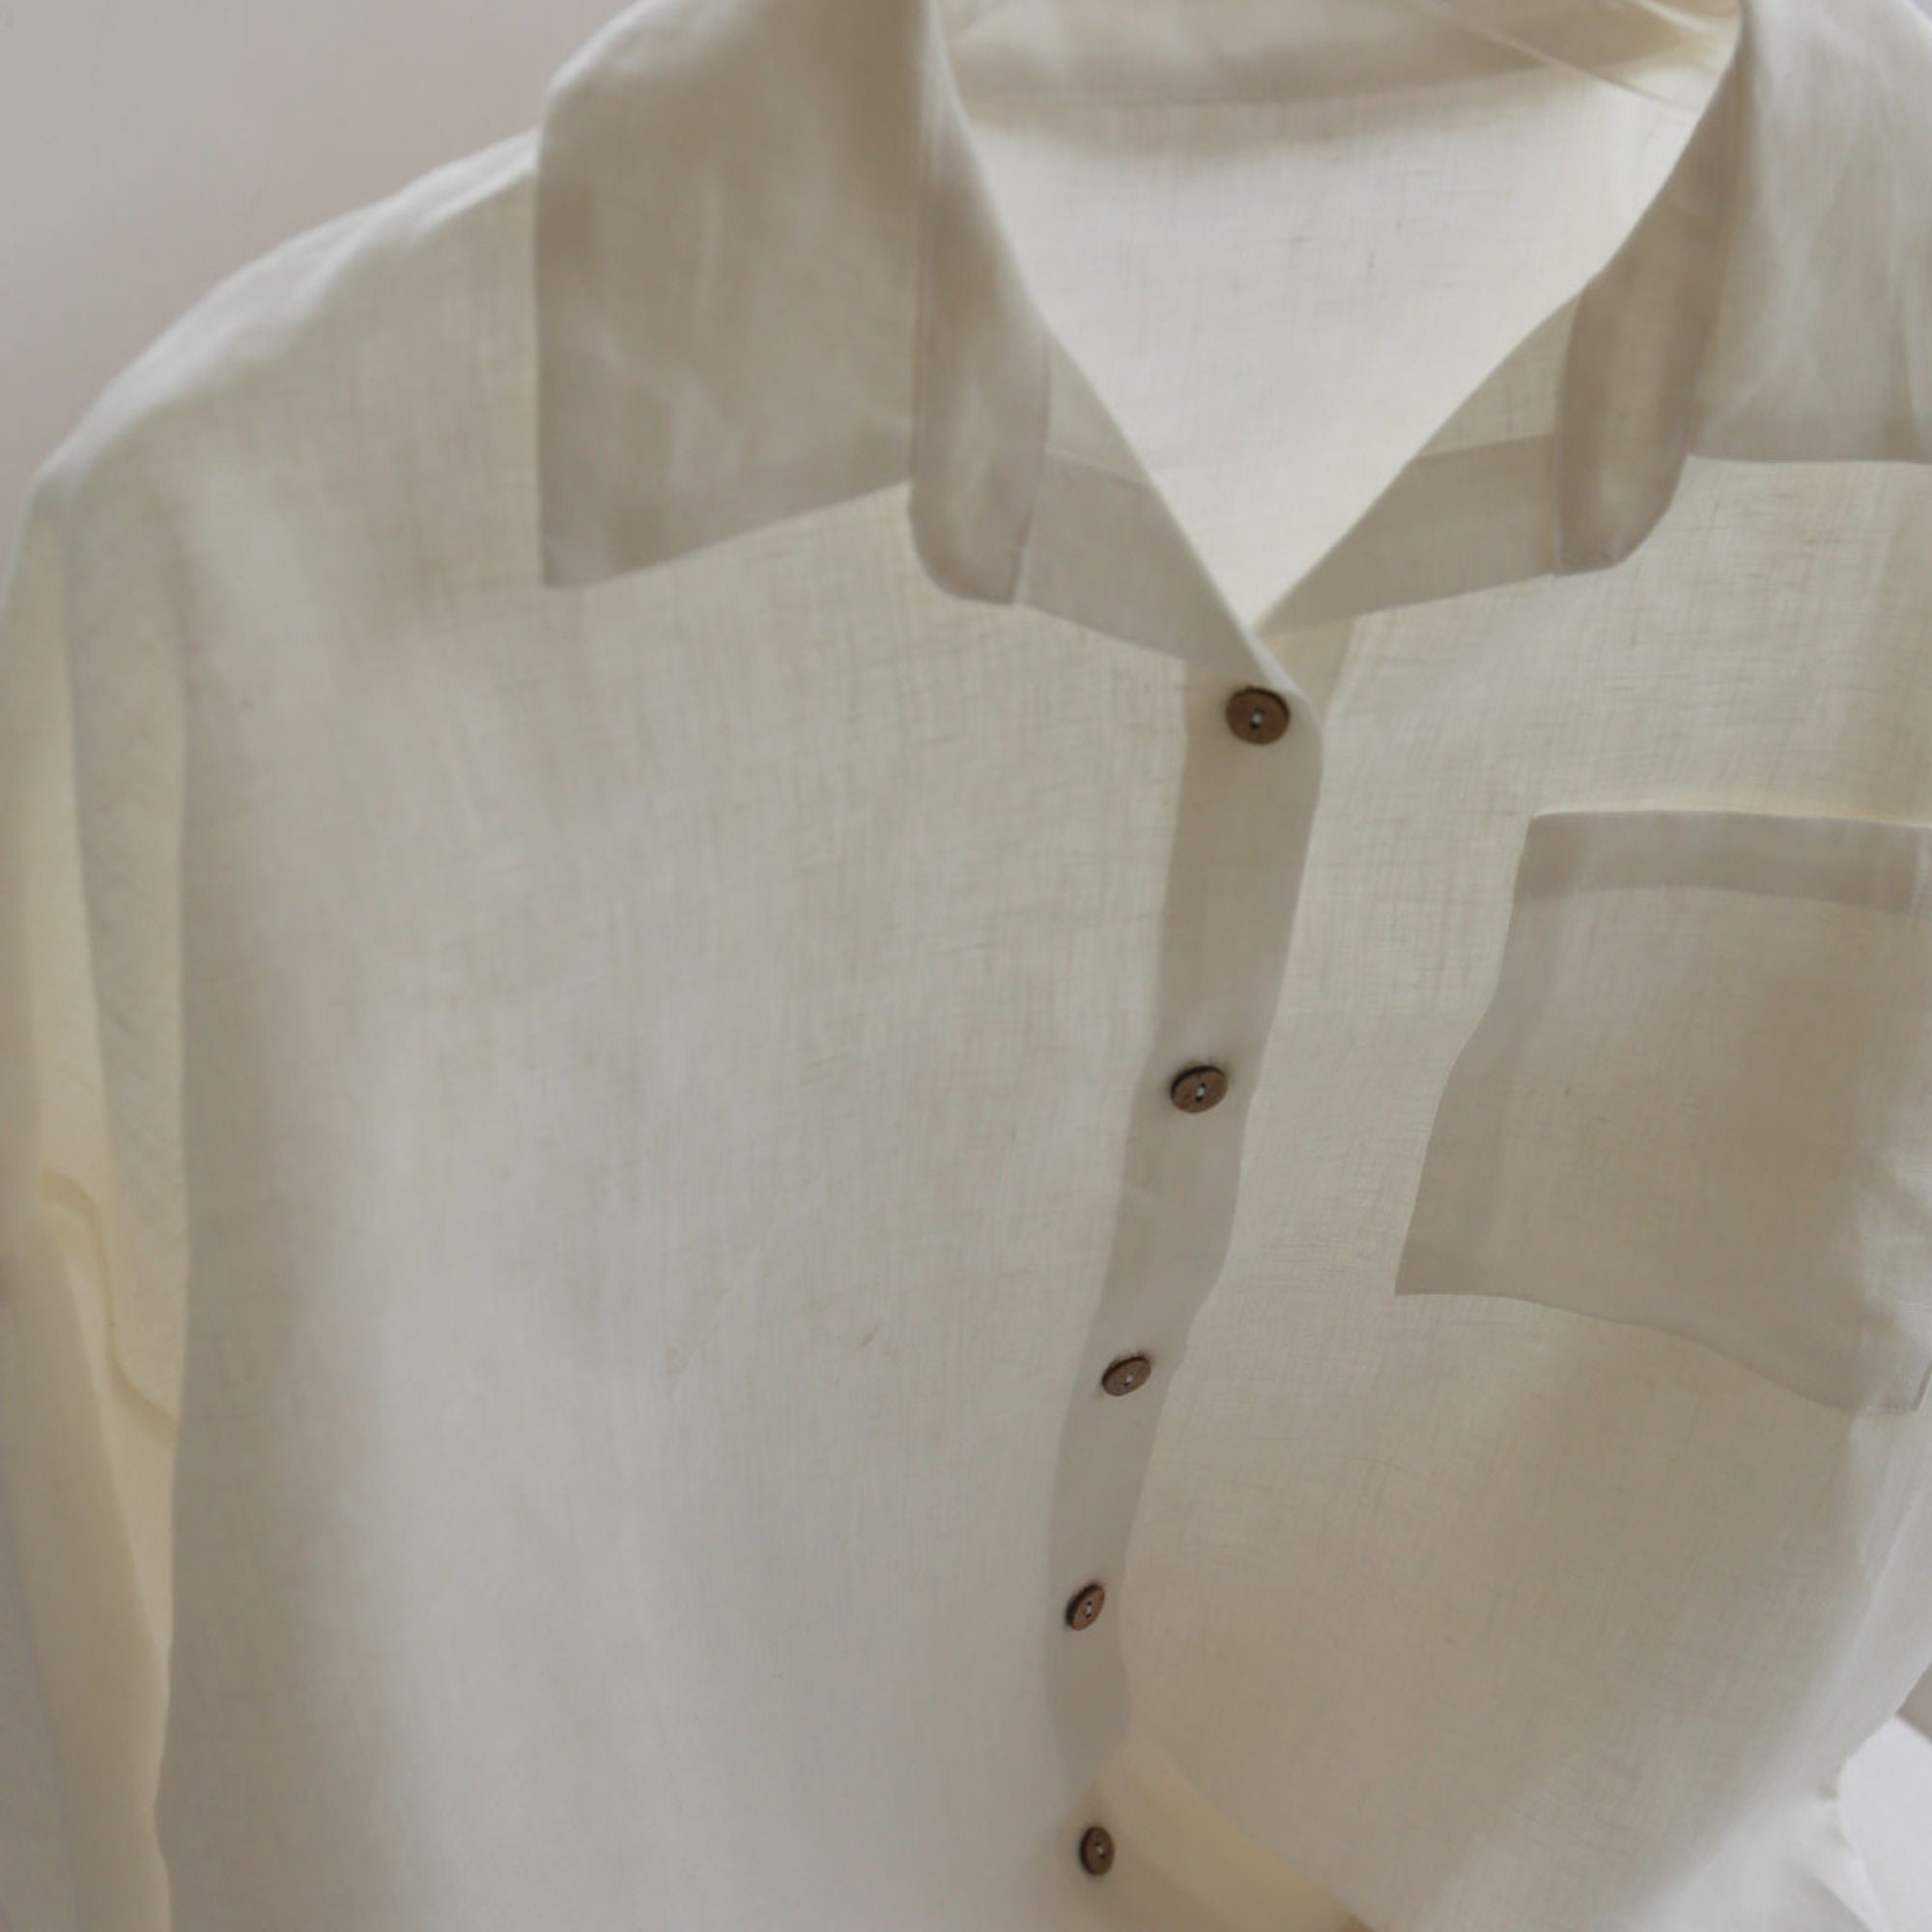 White Linen Shirt KARL, Linen Shirt with Buttons, Men's Shirt